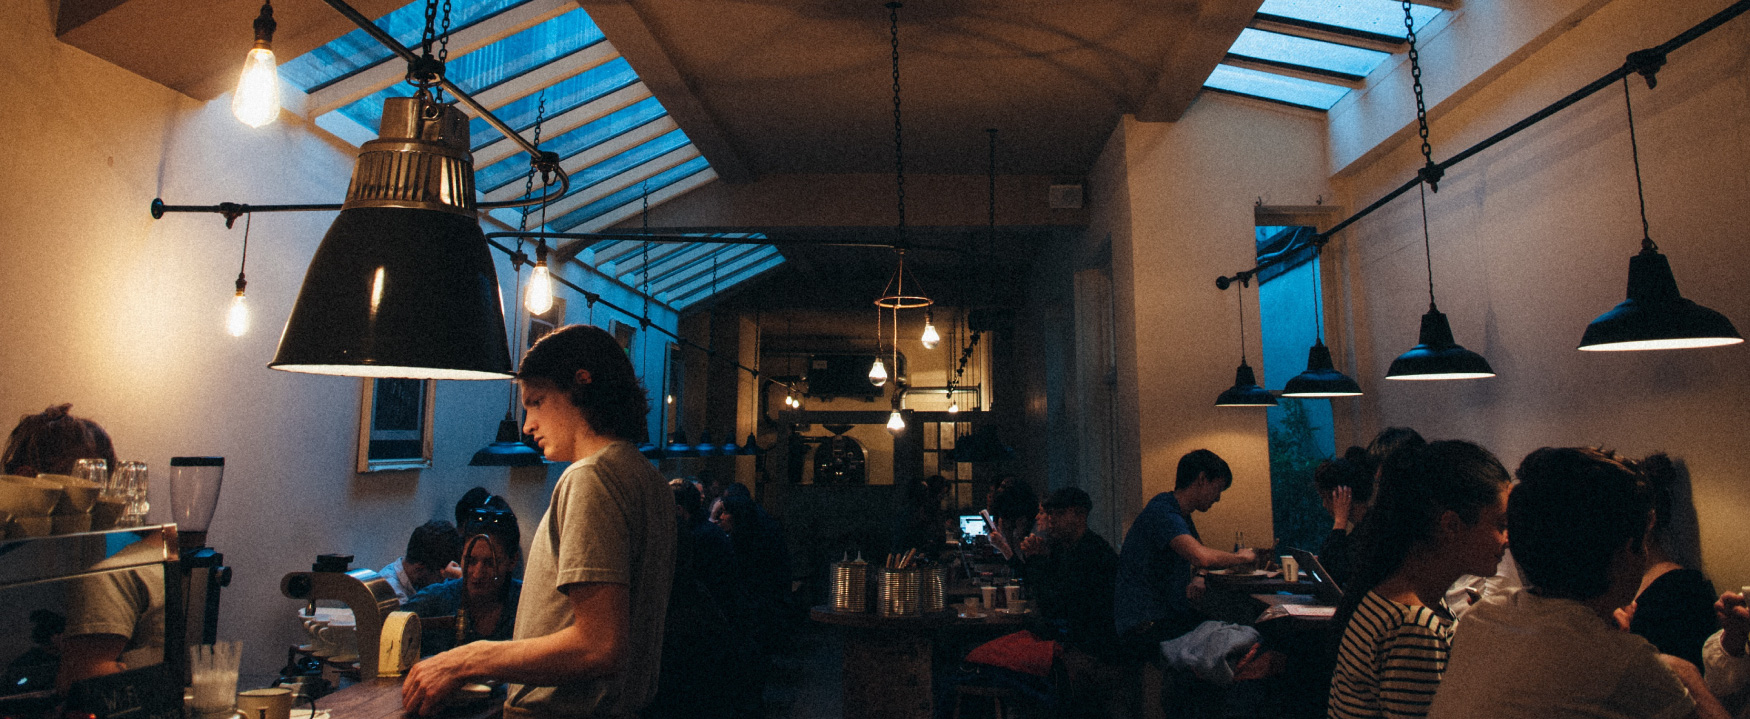 Uma cafeteria mal iluminada e lotada é mostrada. Os clientes se sentam às mesas e um trabalhador atende um cliente no balcão.